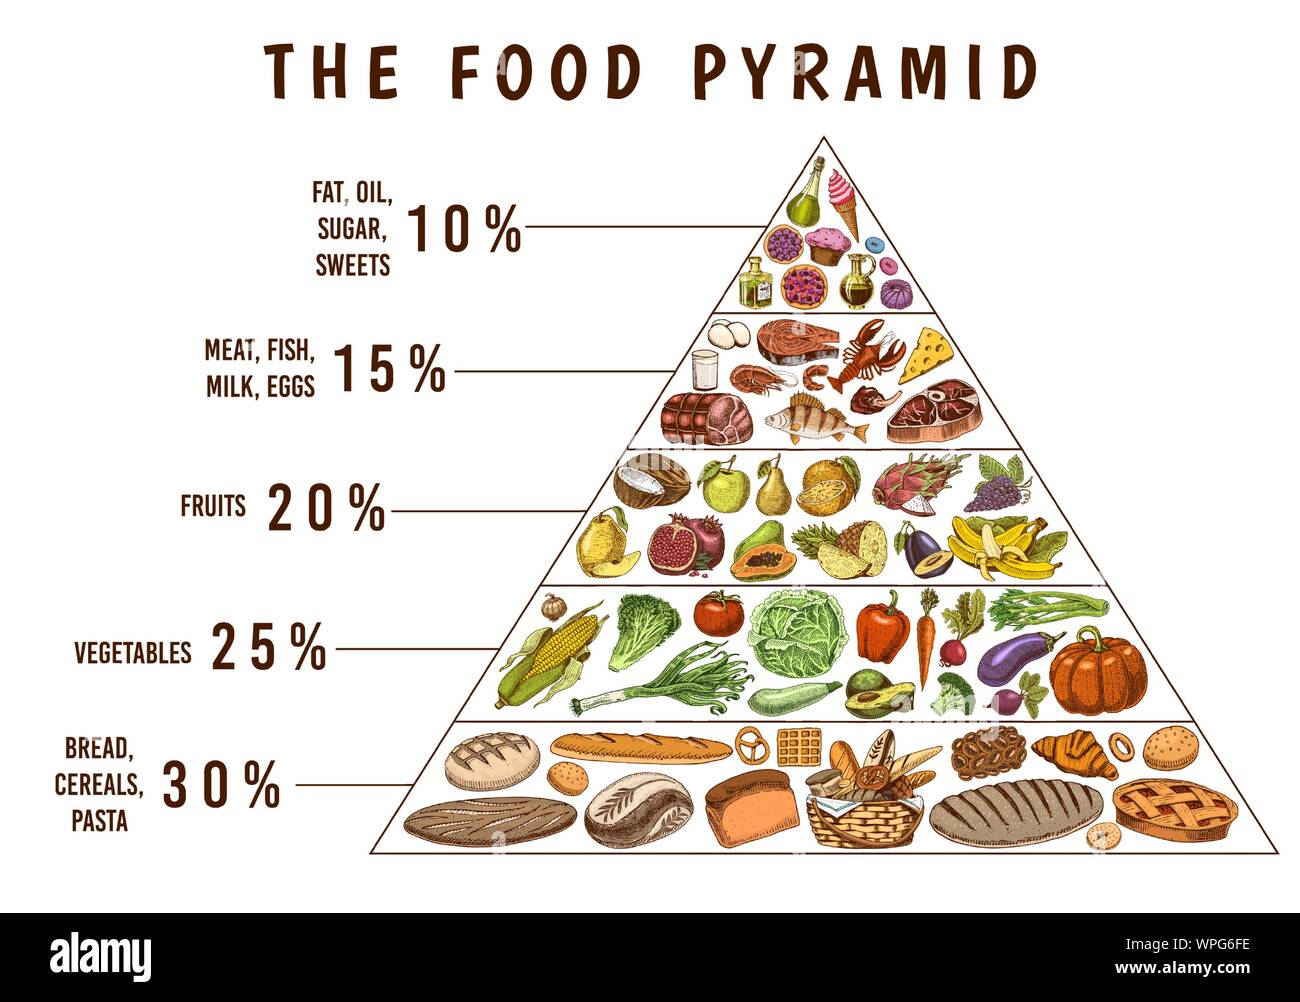 Pyramide de la nutrition Banque d'images détourées - Alamy